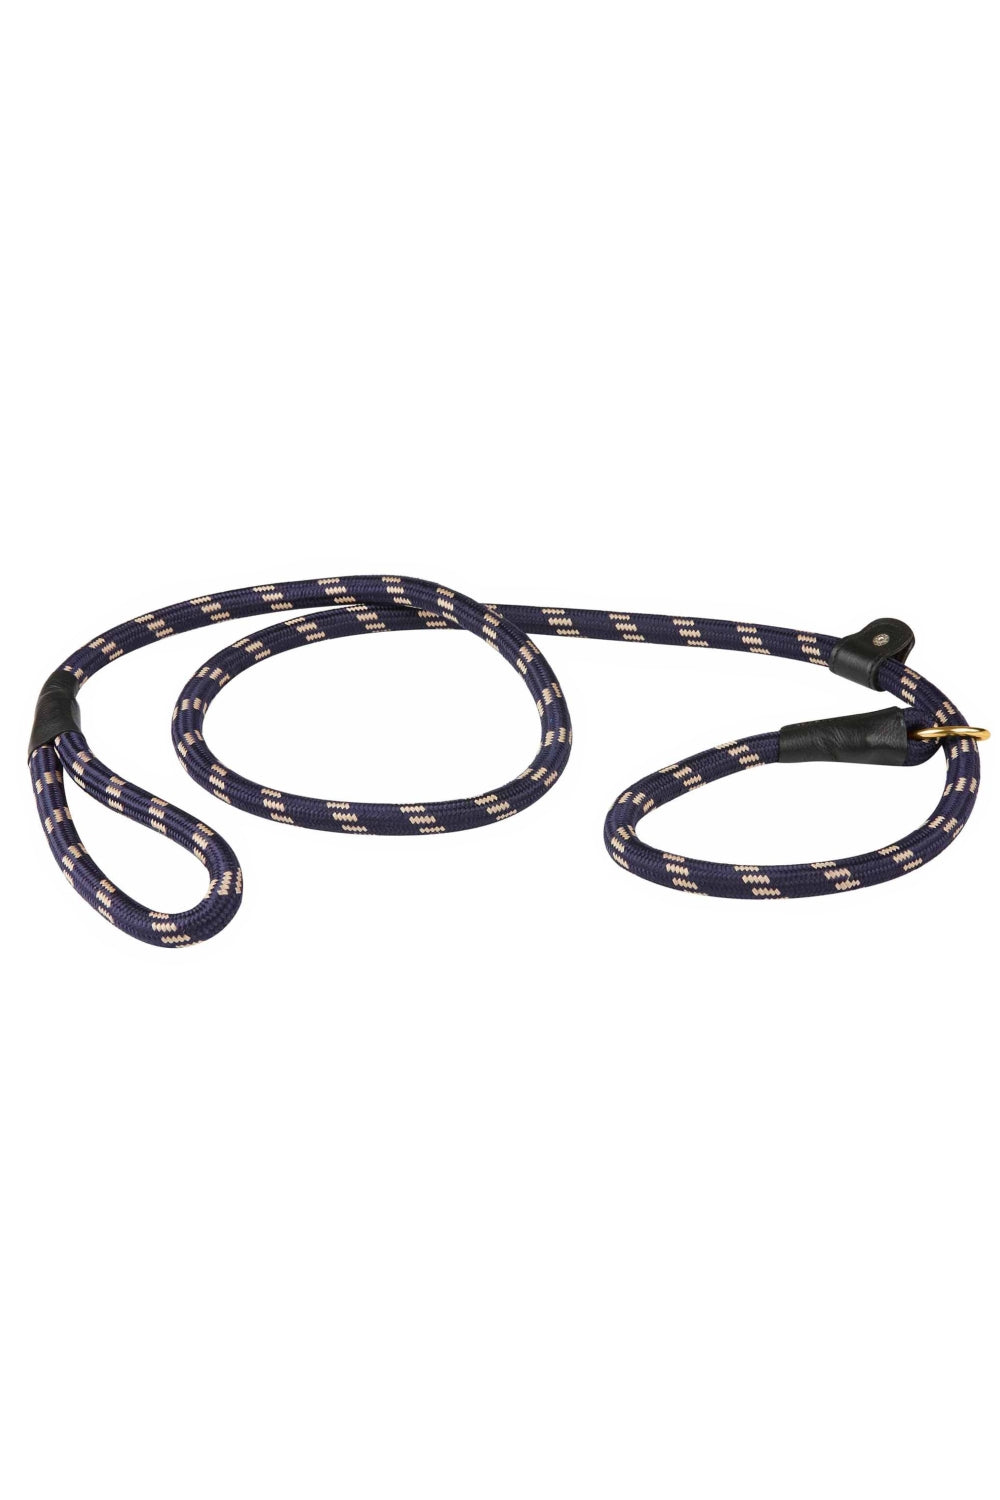 WeatherBeeta Rope Leather Slip Dog Lead in Navy/Brown 